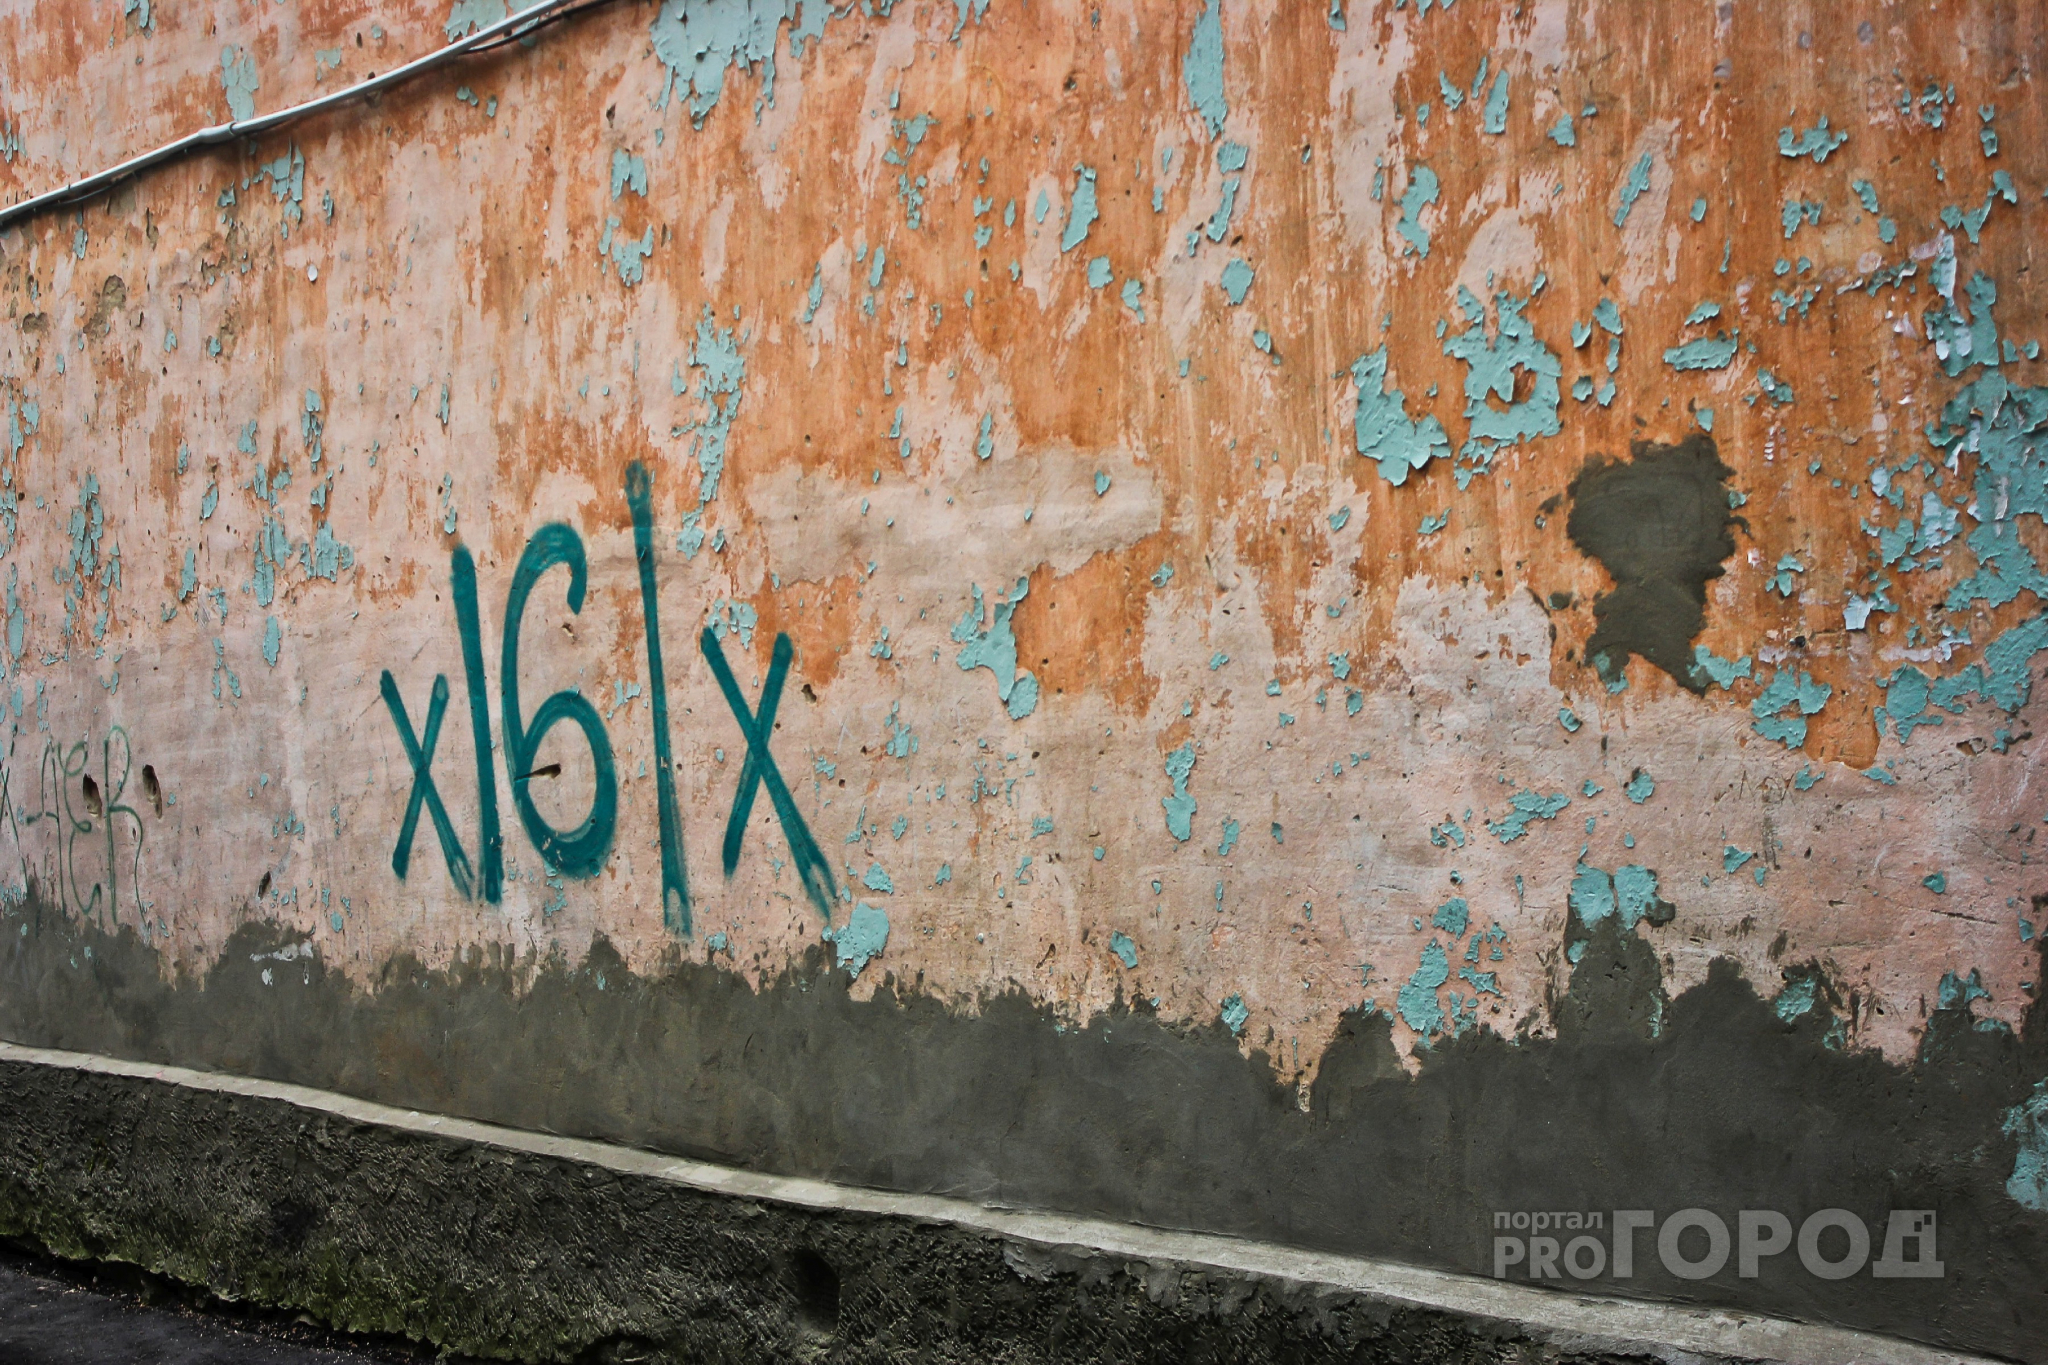 Мэрия Йошкар-Олы направила более 500 требований очистить город от граффити